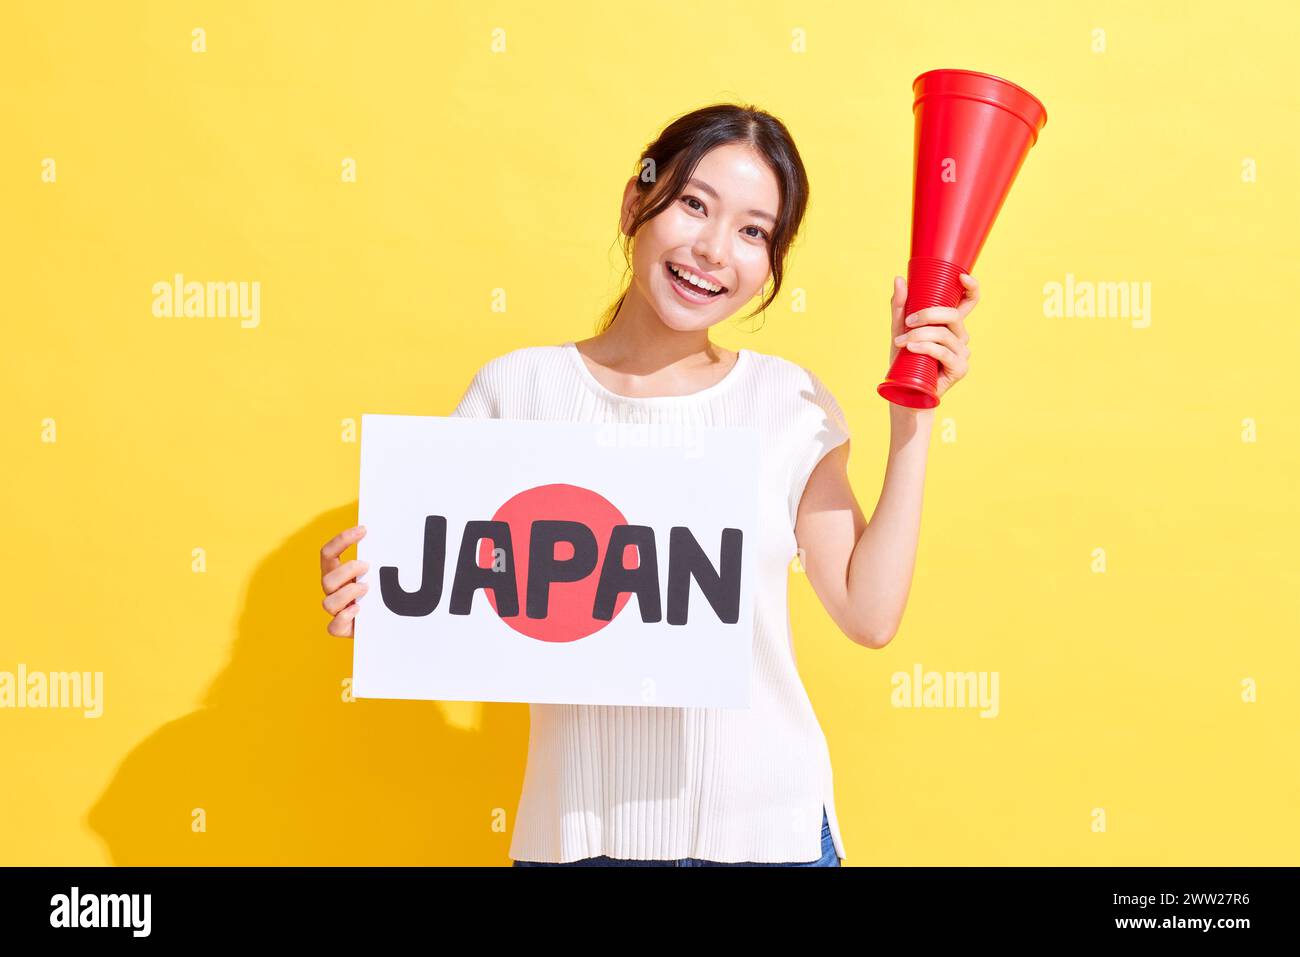 Femme japonaise tenant une pancarte avec du texte japonais et un mégaphone Banque D'Images